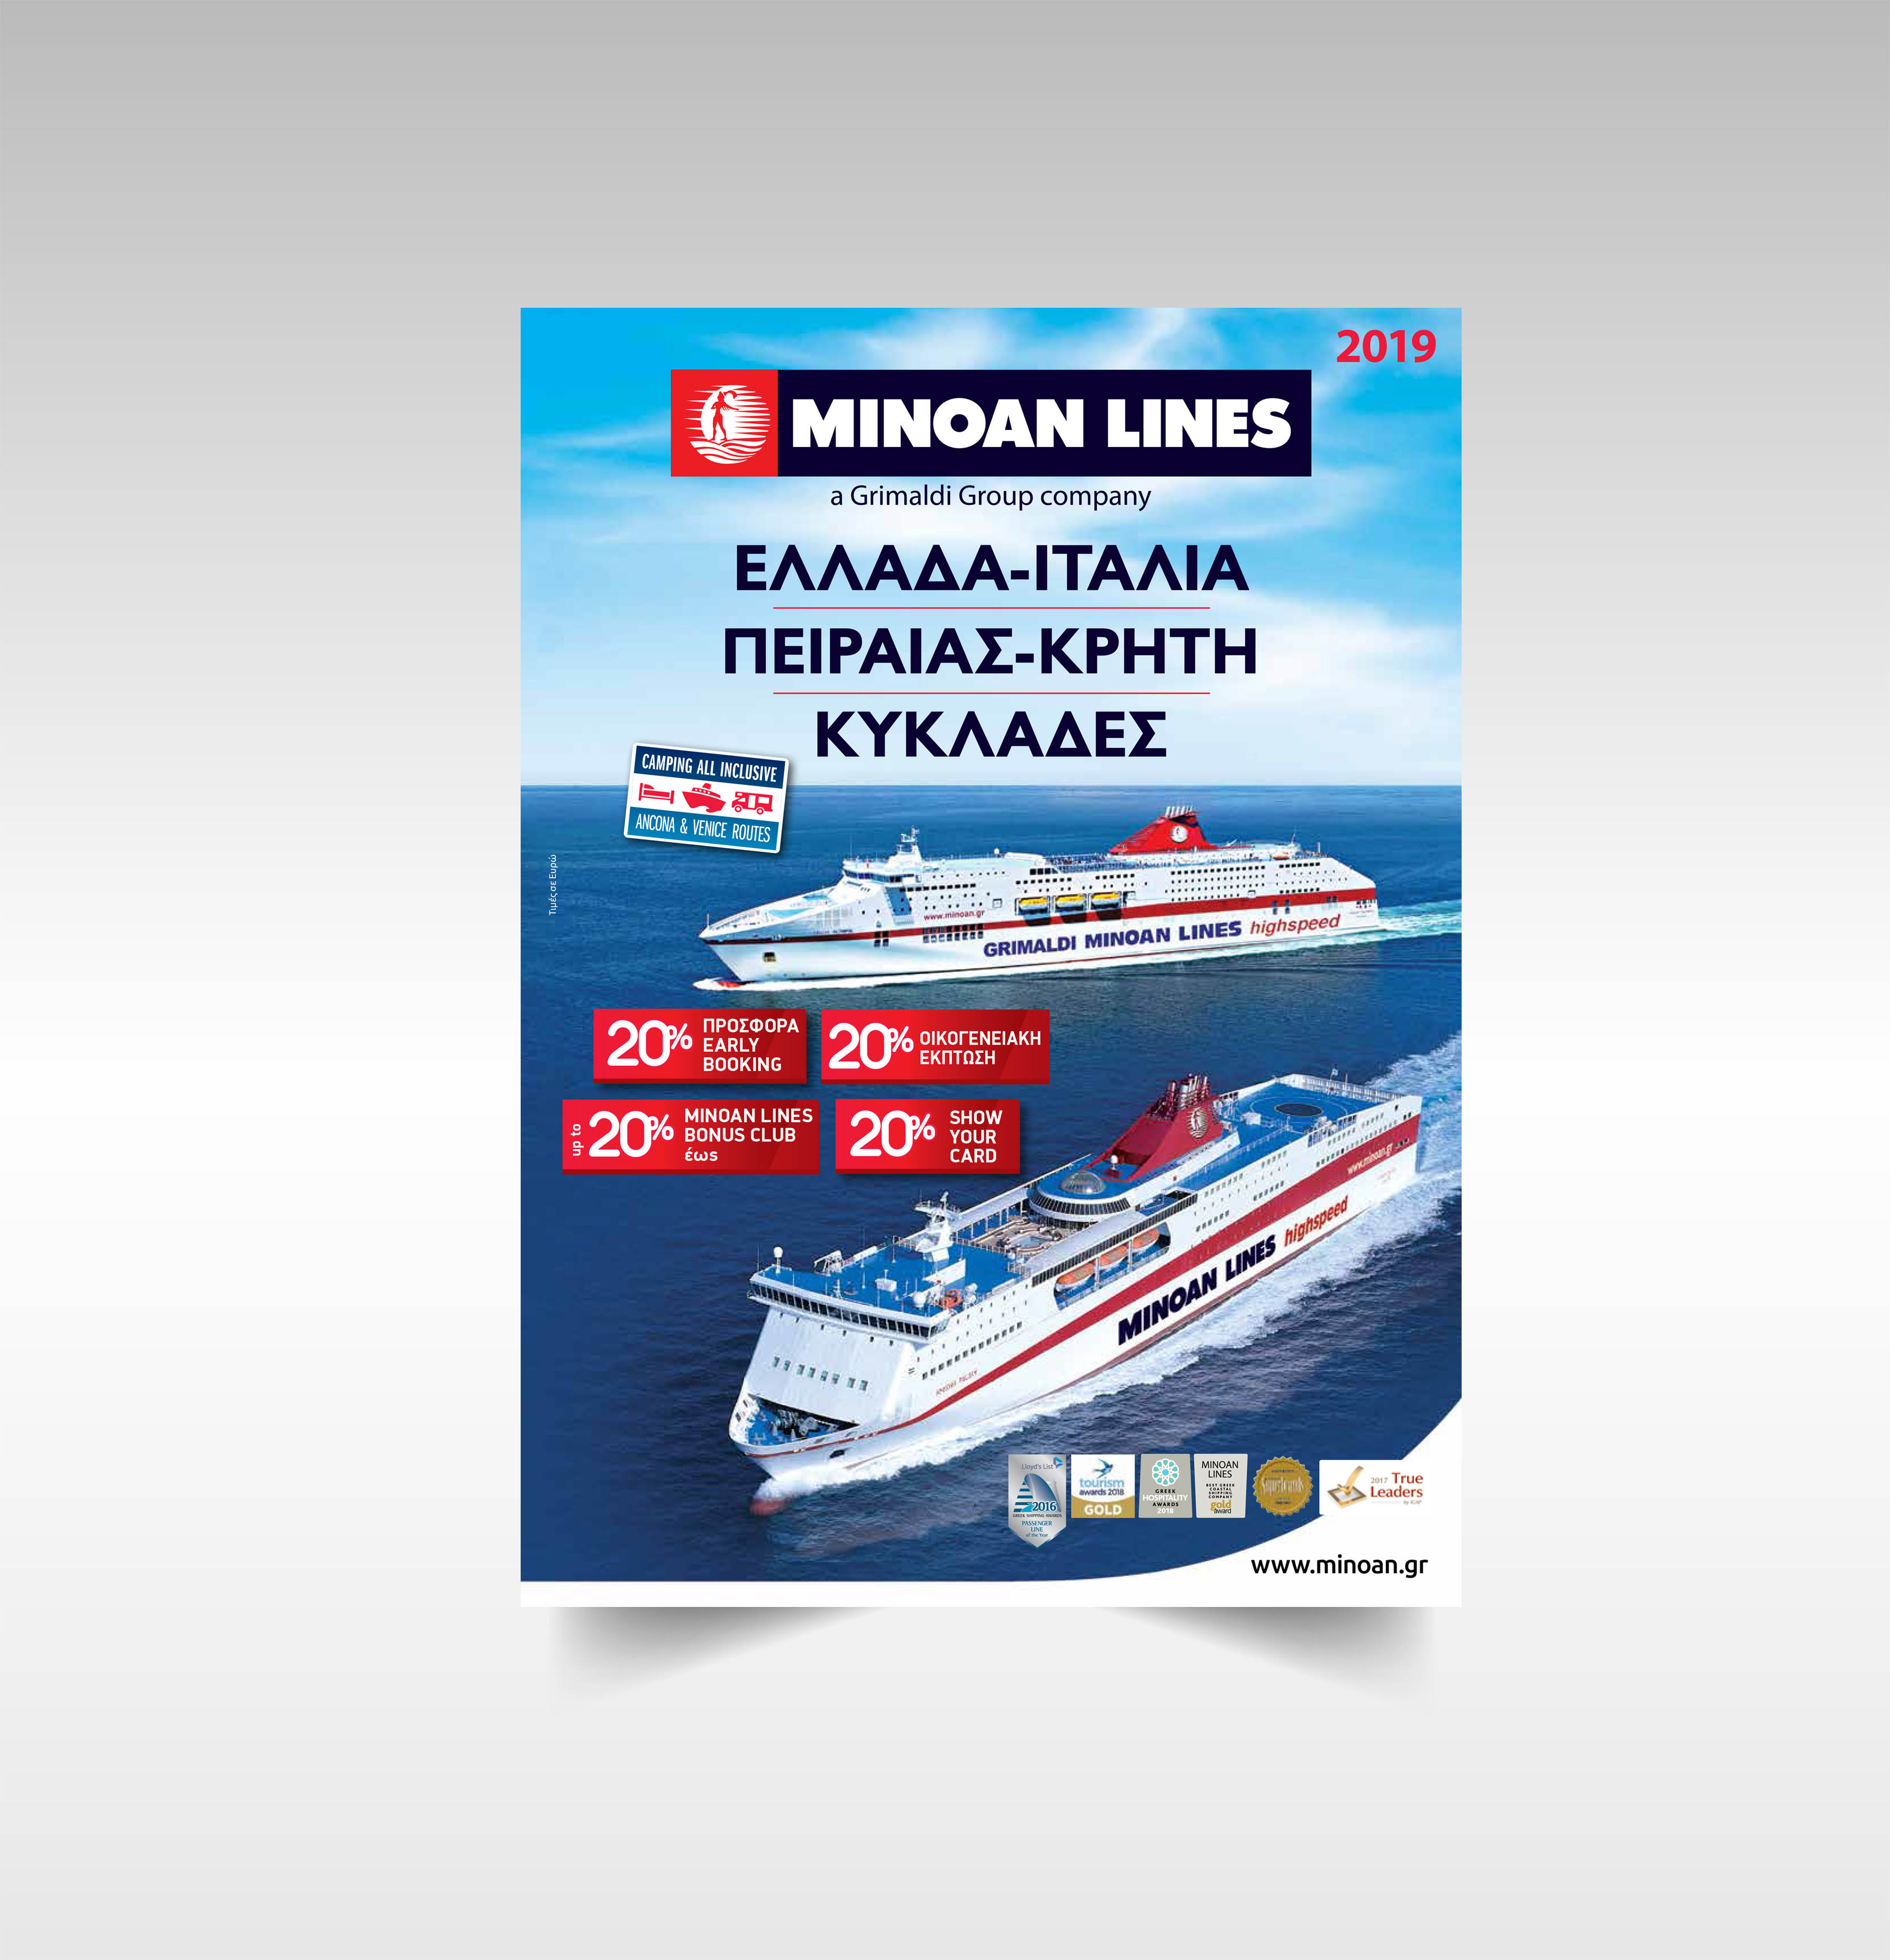 Minoan Lines brochure design